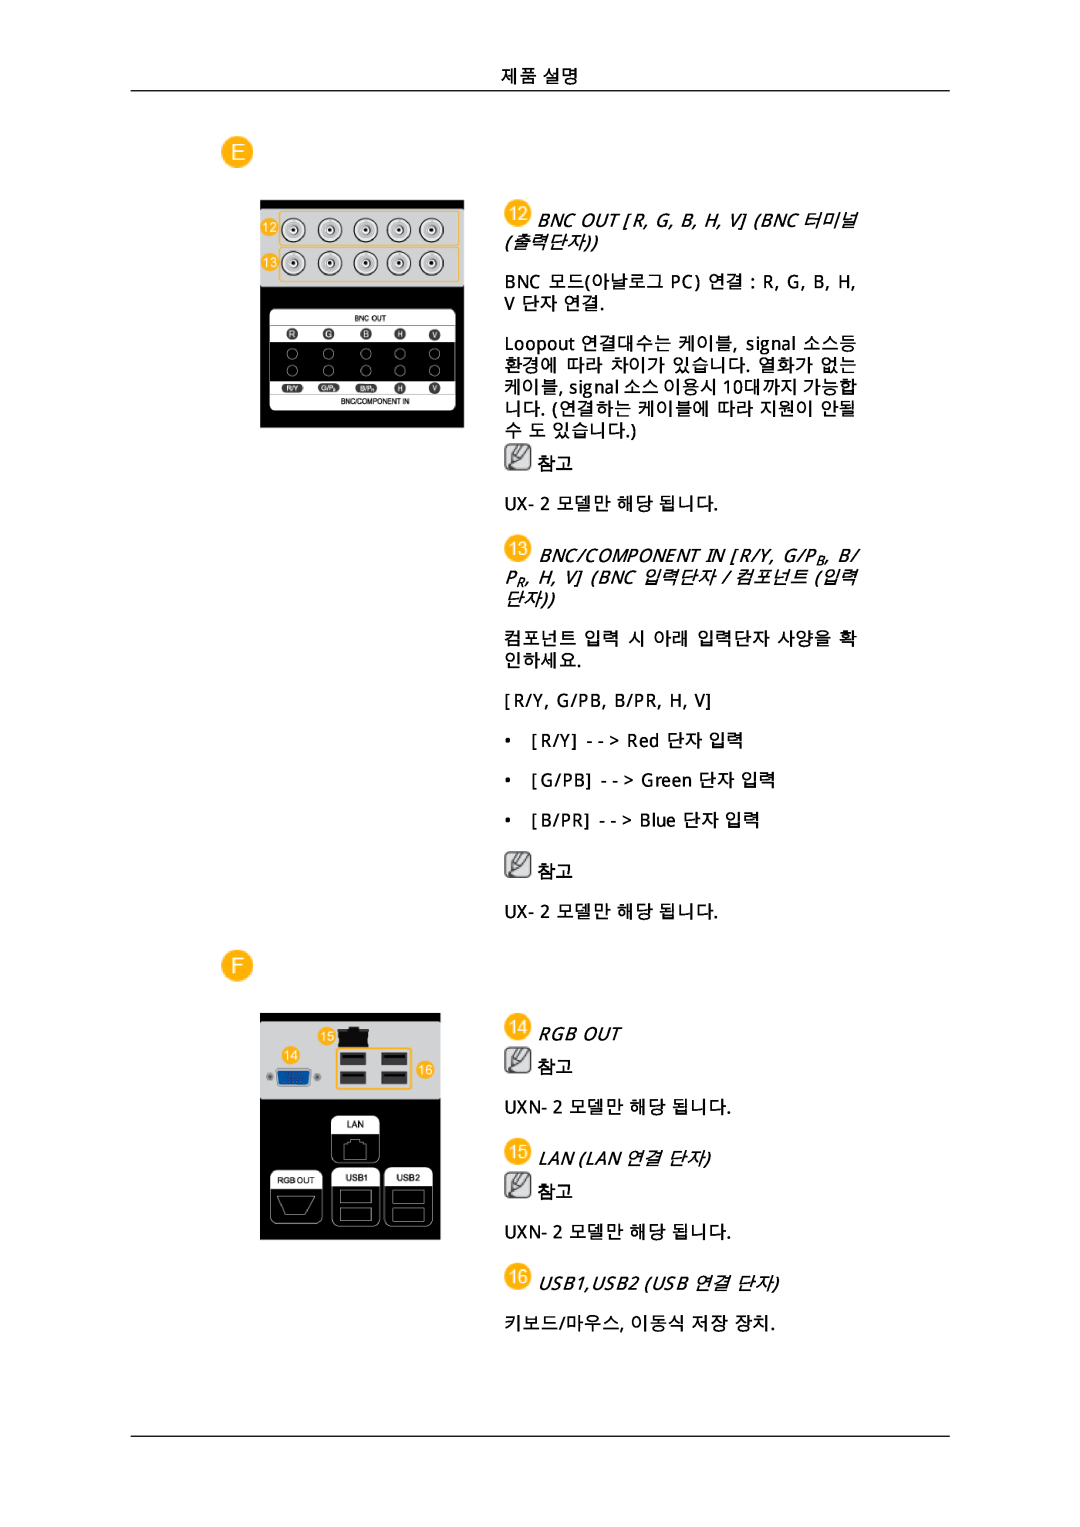 Samsung 725D Bnc Out R, G, B, H, V Bnc 터미널, 출력단자, Bnc/Component In R/Y, G/Pb, B/ Pr, H, V Bnc 입력단자 / 컴포넌트 입력, Rgb Out 